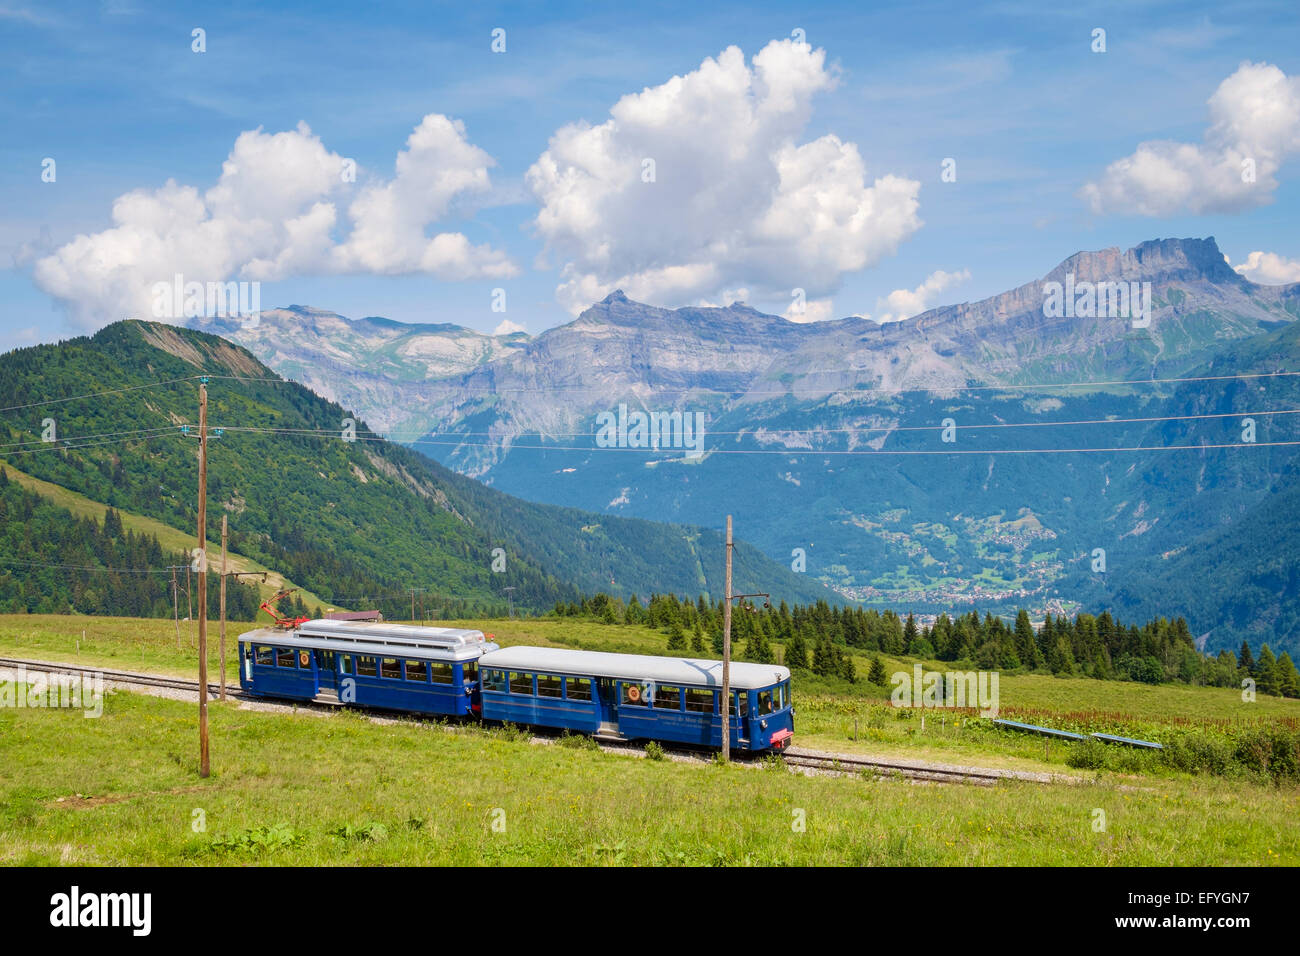 Der Mont Blanc-Berg-Zahnradbahn mit Servoz Dorf unten am Bellevue, in der Nähe von Chamonix, Französische Alpen, Frankreich Stockfoto